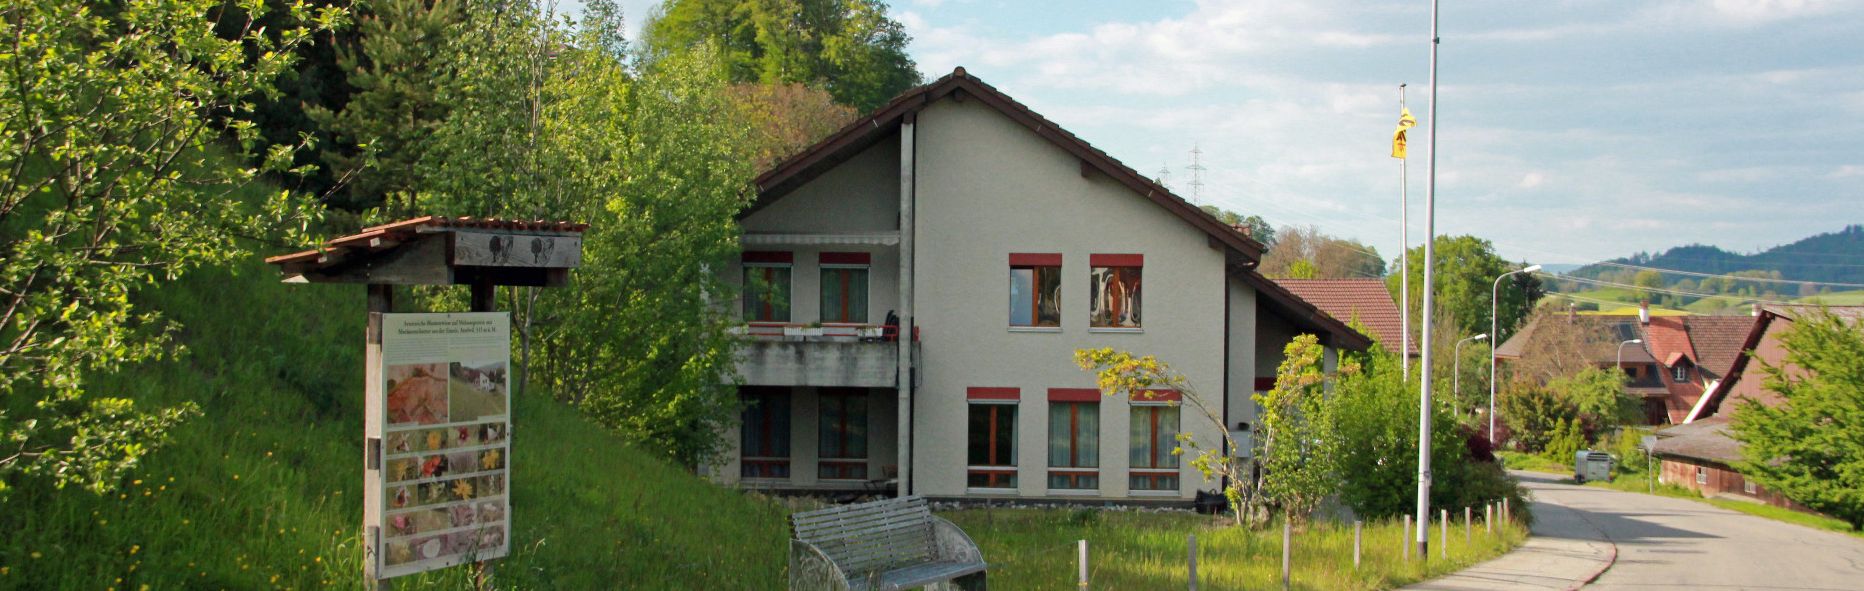 Gemeindehaus Attelwil